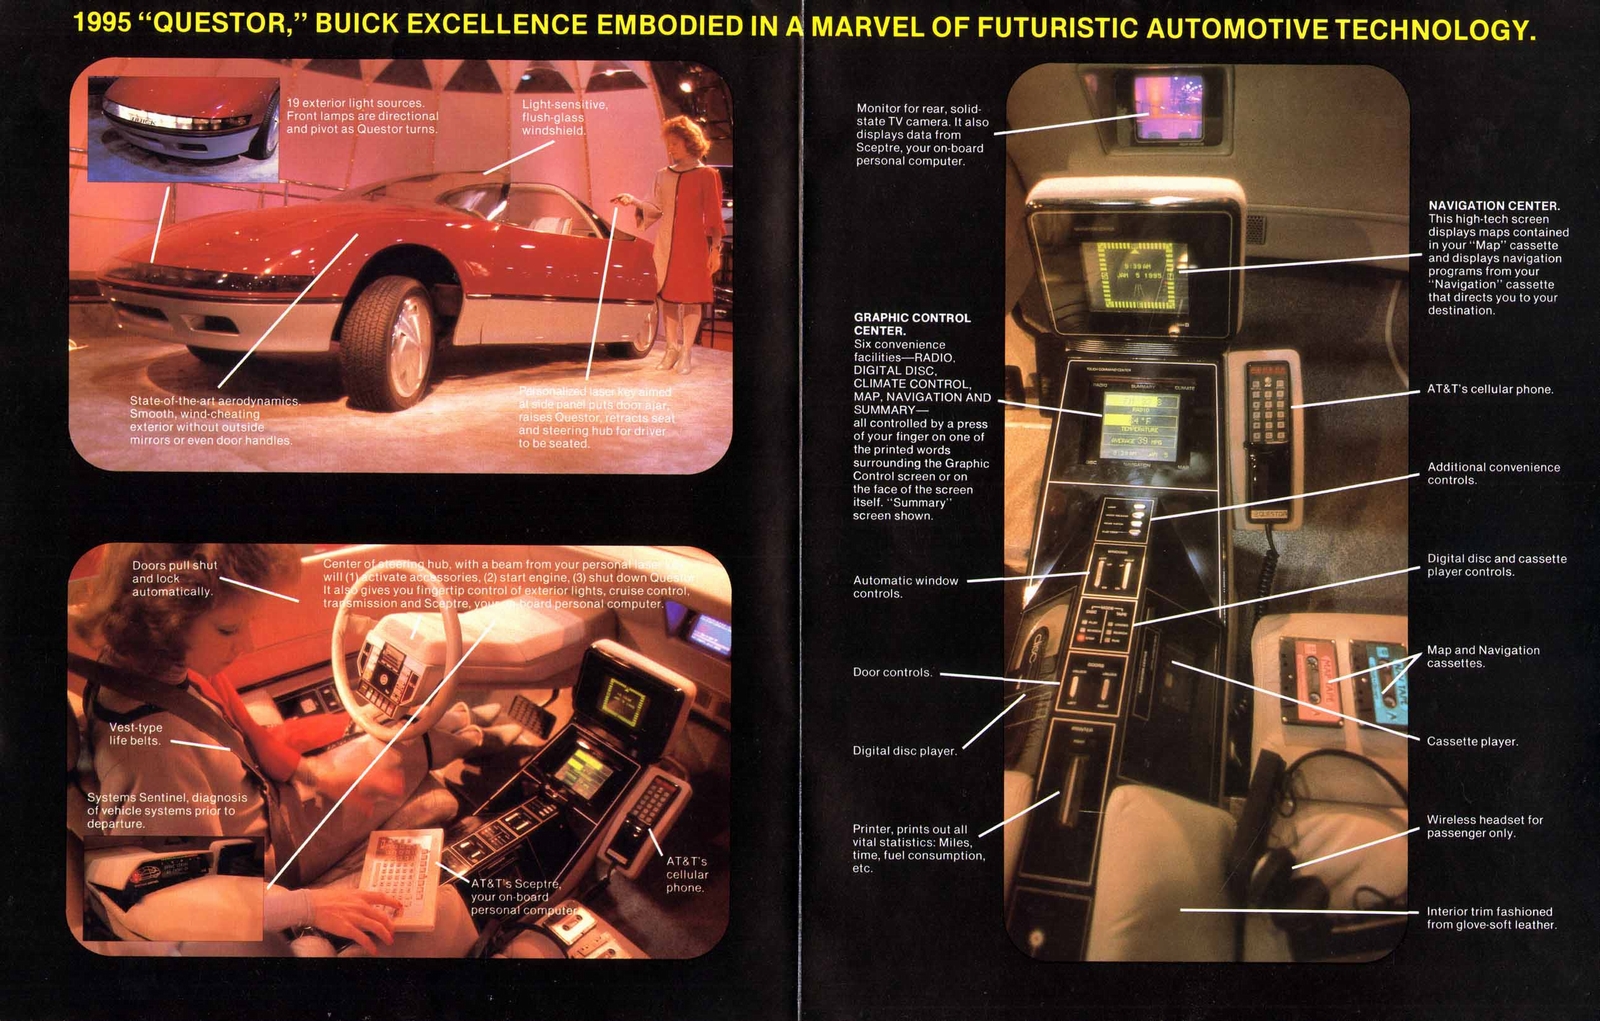 n_1983 -1995 Buick Questor-02-03.jpg